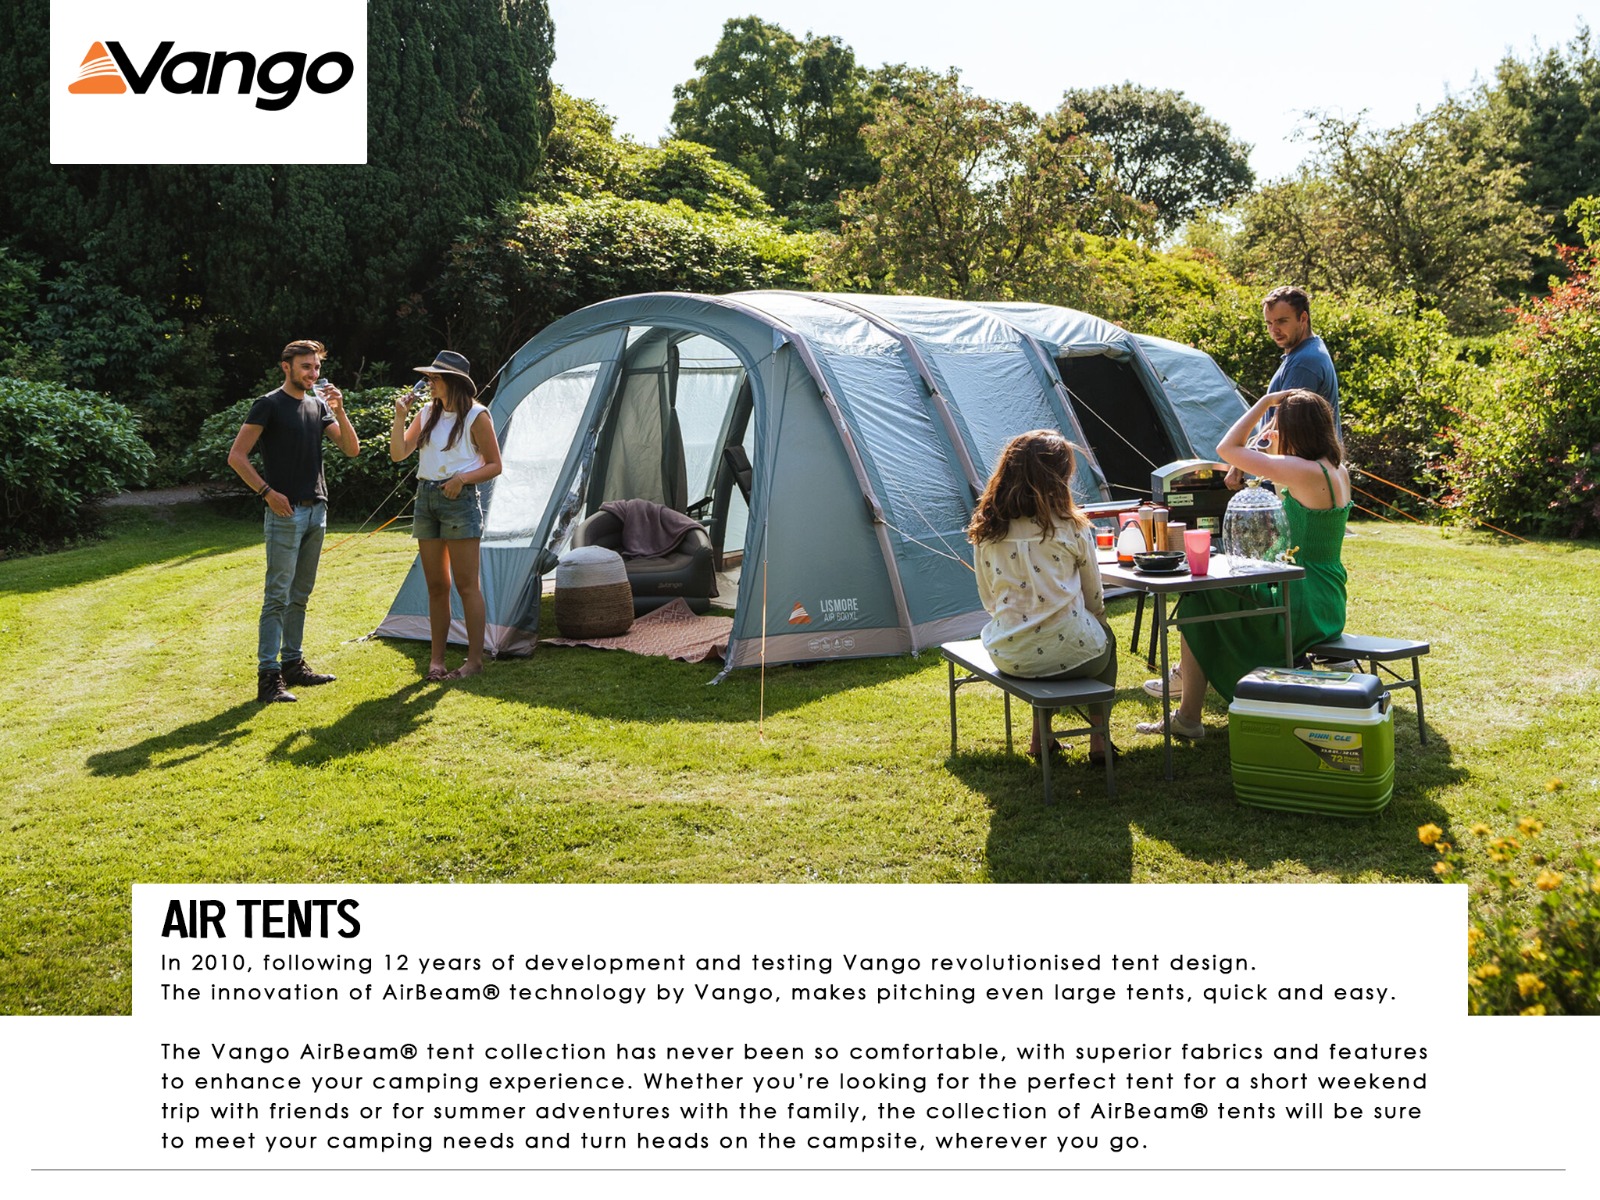 Vango Air Tents